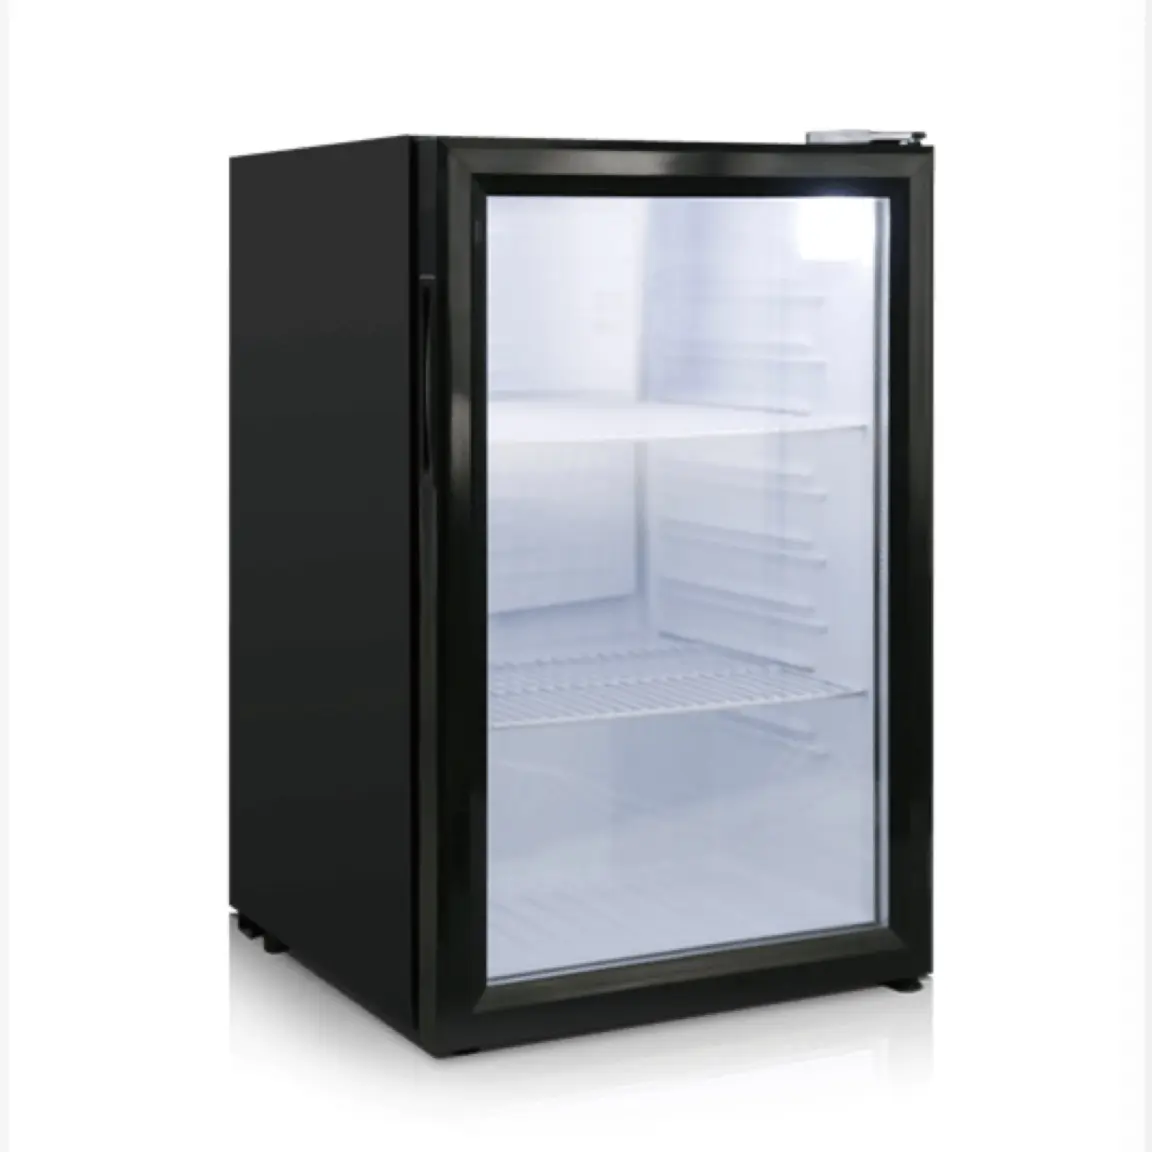 Thiết Bị Làm Lạnh Tủ Lạnh Màn Hình LCD Trong Suốt Nhỏ Hơn 21.5Inch